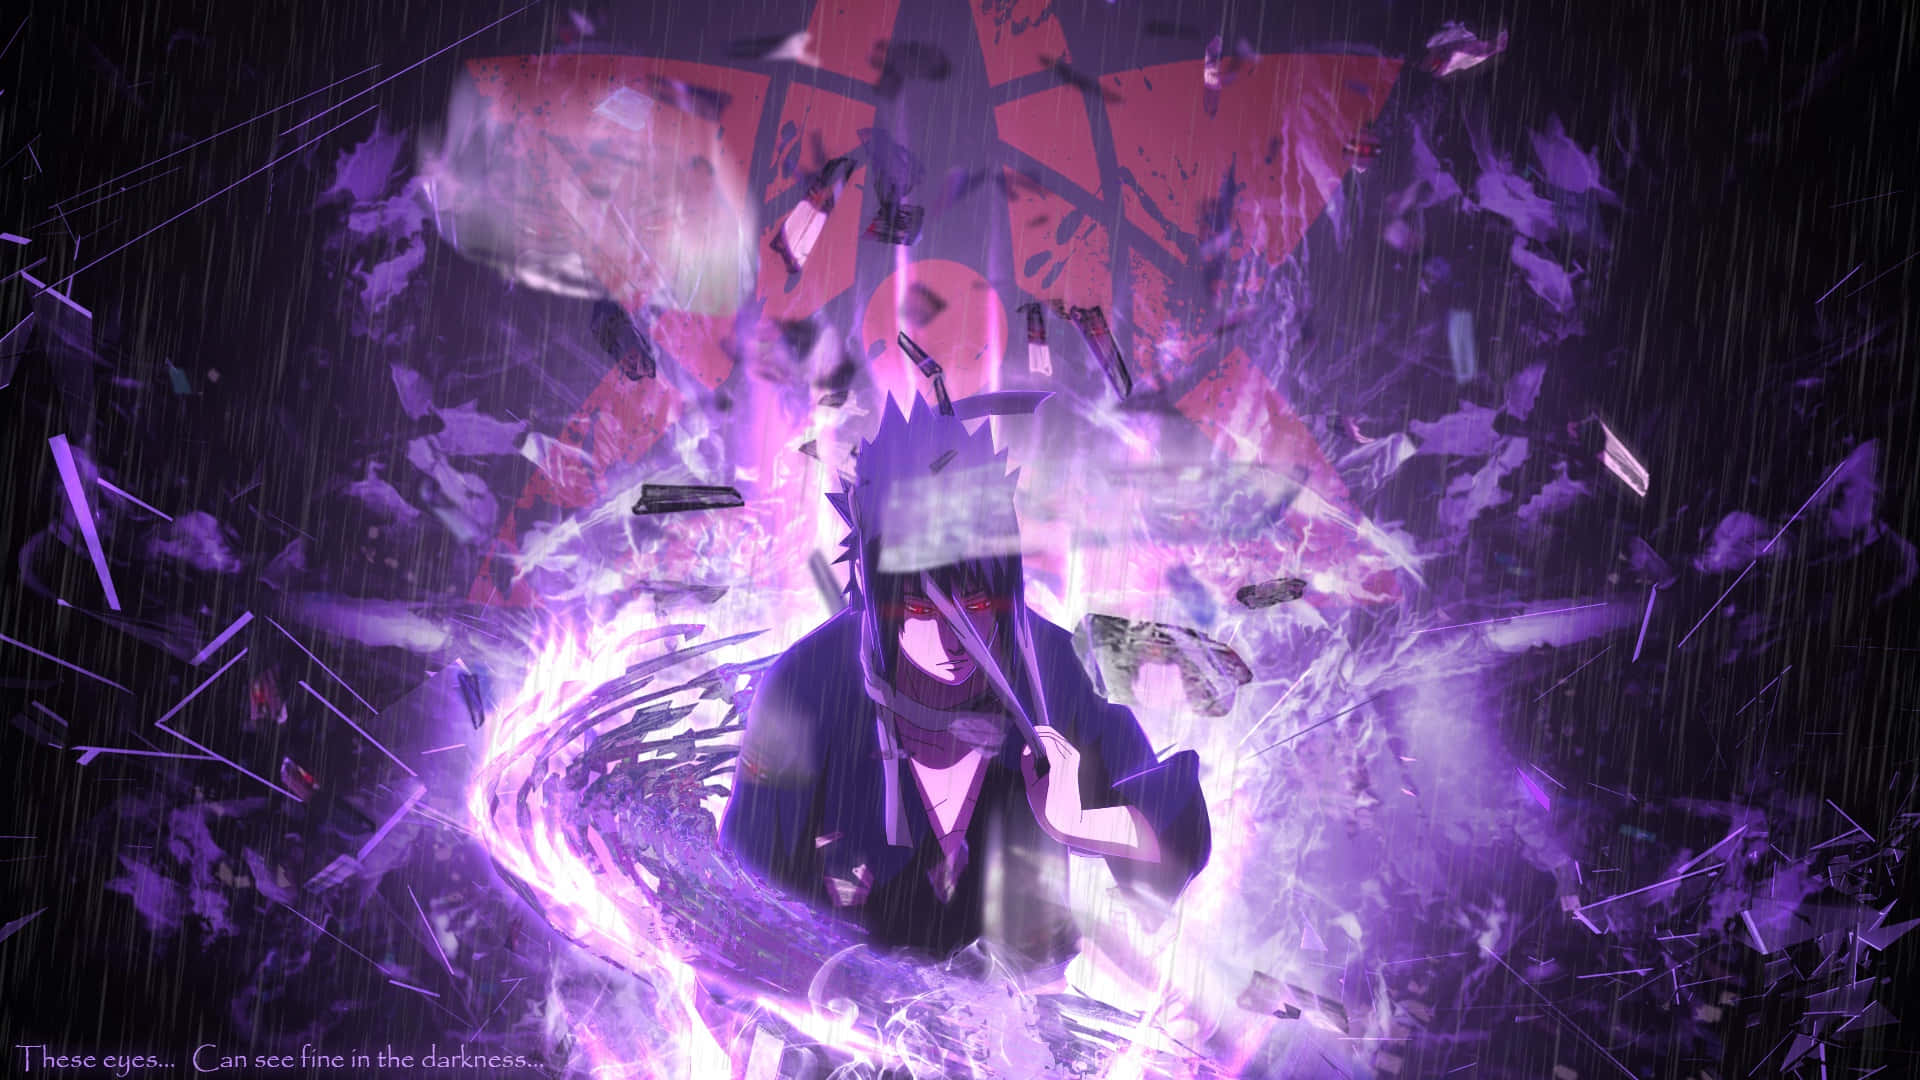 Sasuke Uchiha, a powerful shinobi of the Naruto universe